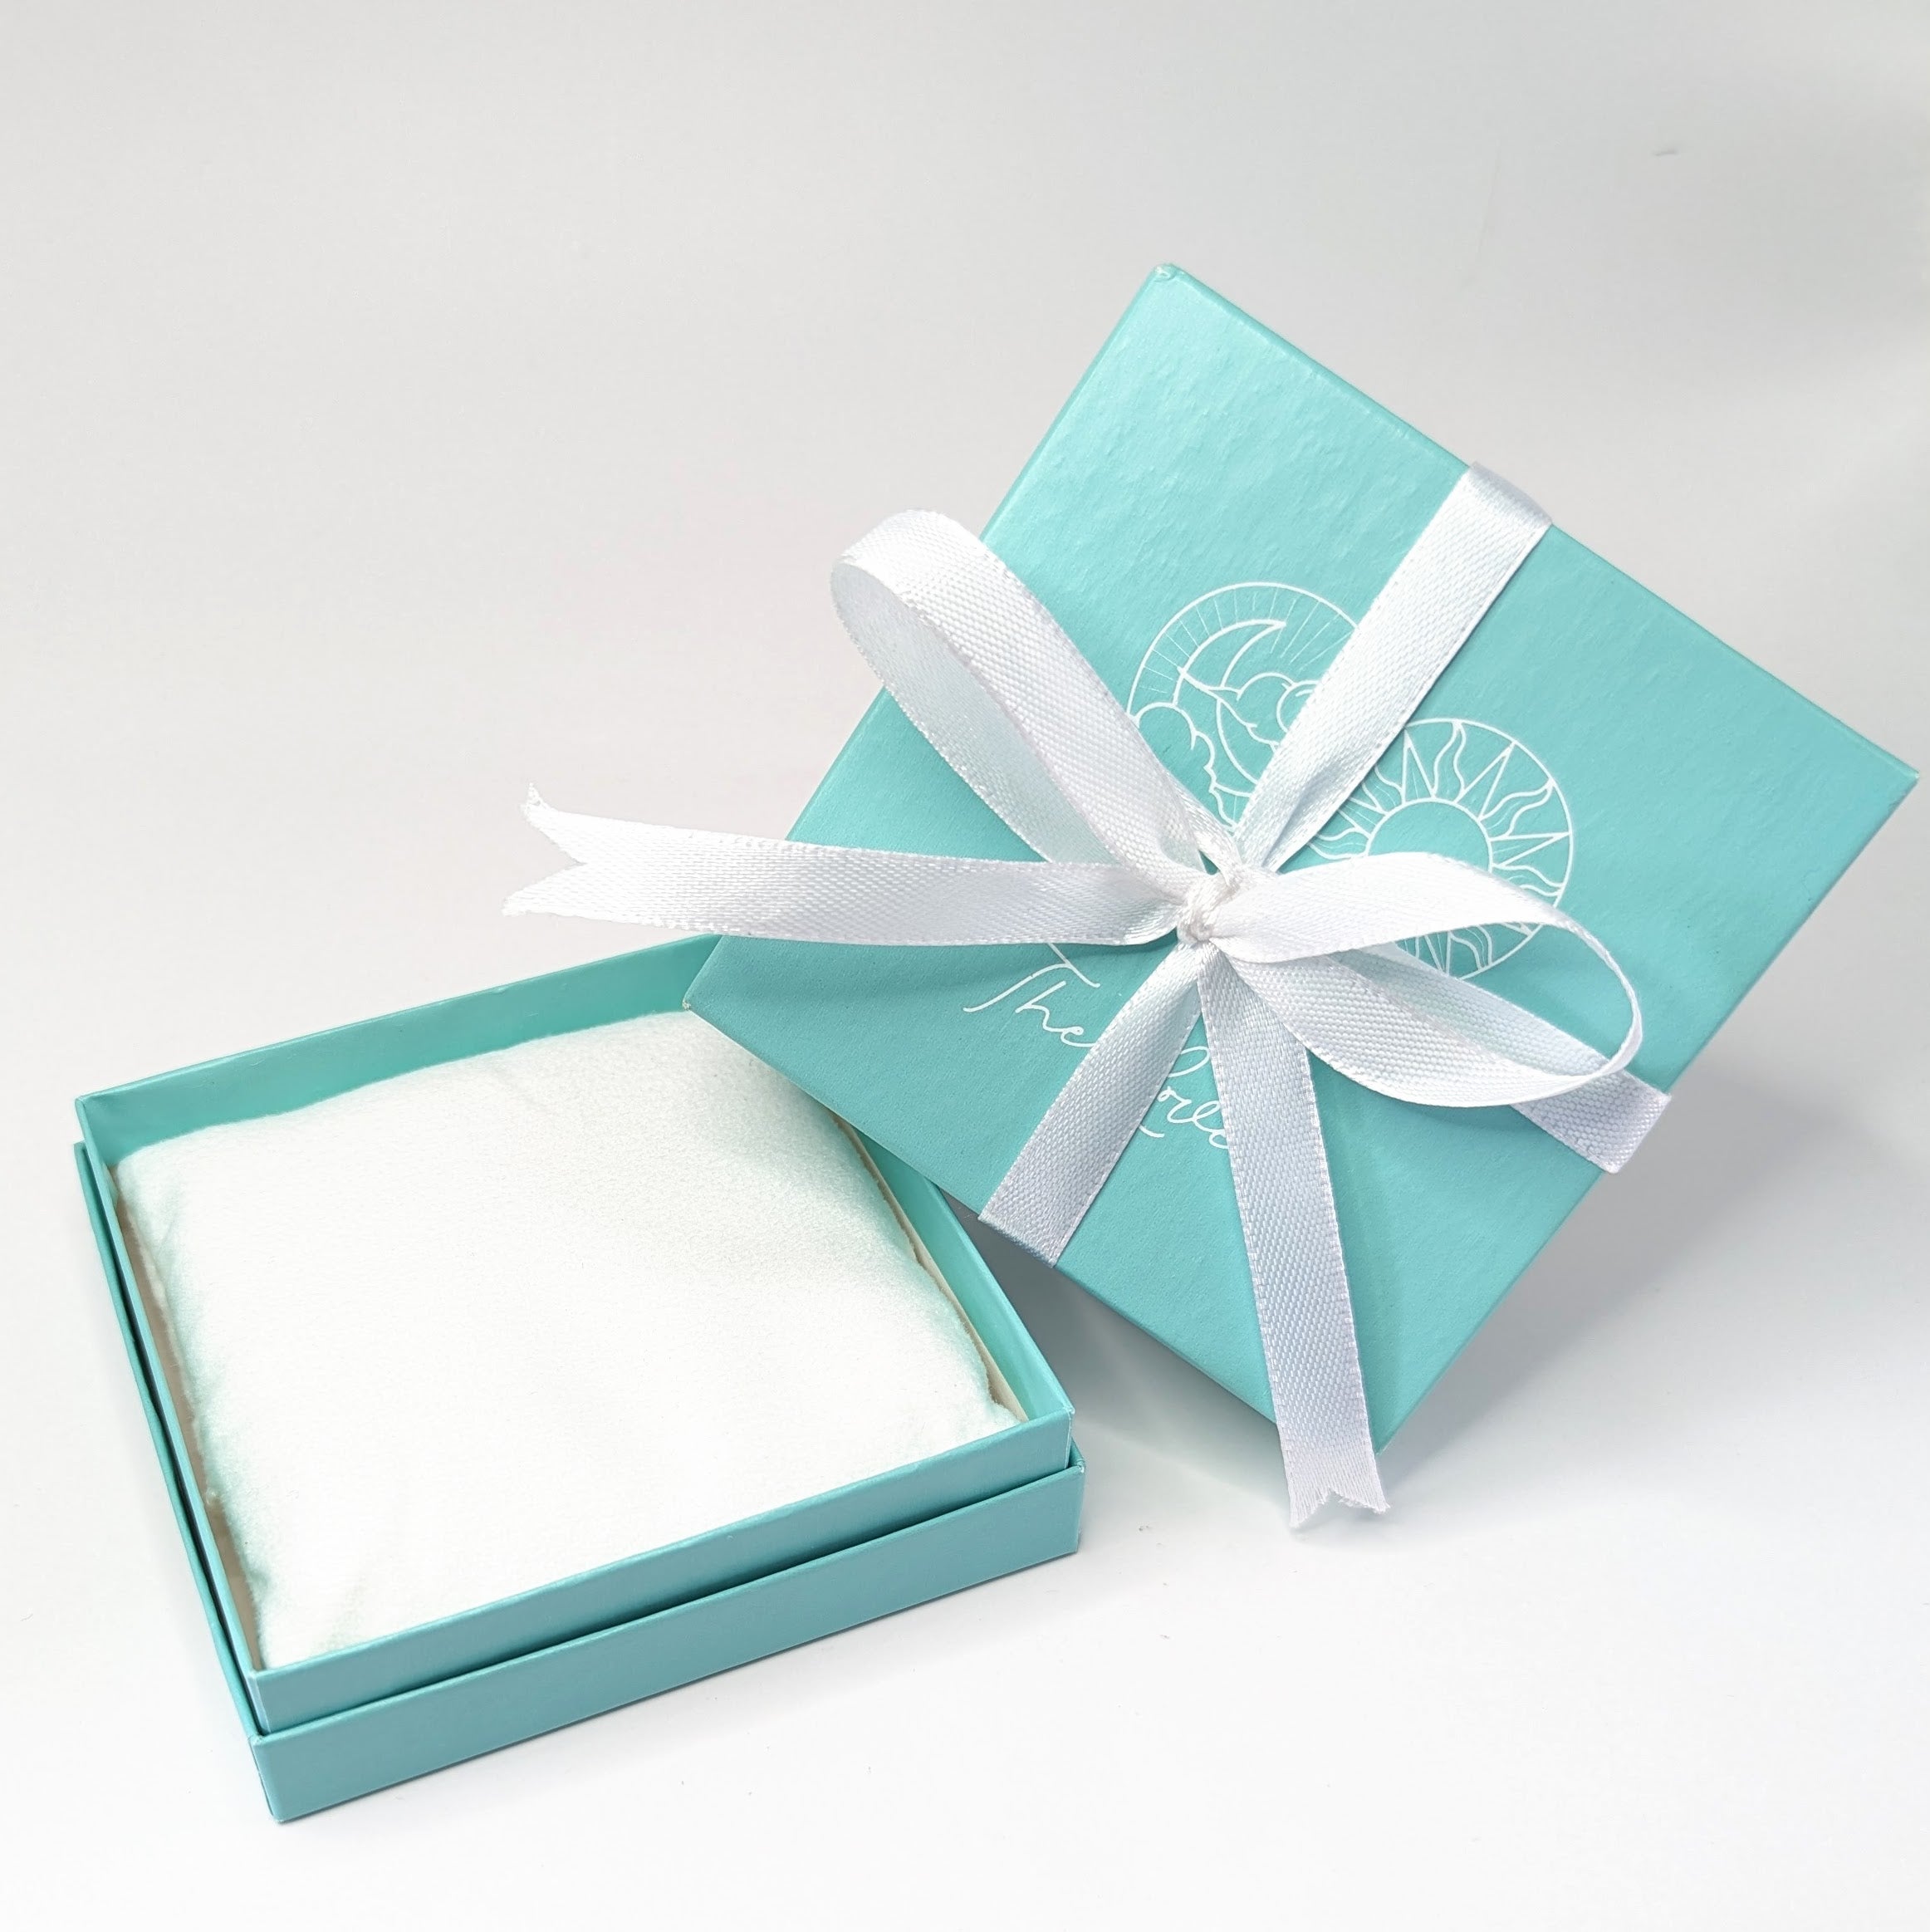 GOLD Bangle & 'Heal Me' Crystal Charm Bracelet Gift Set